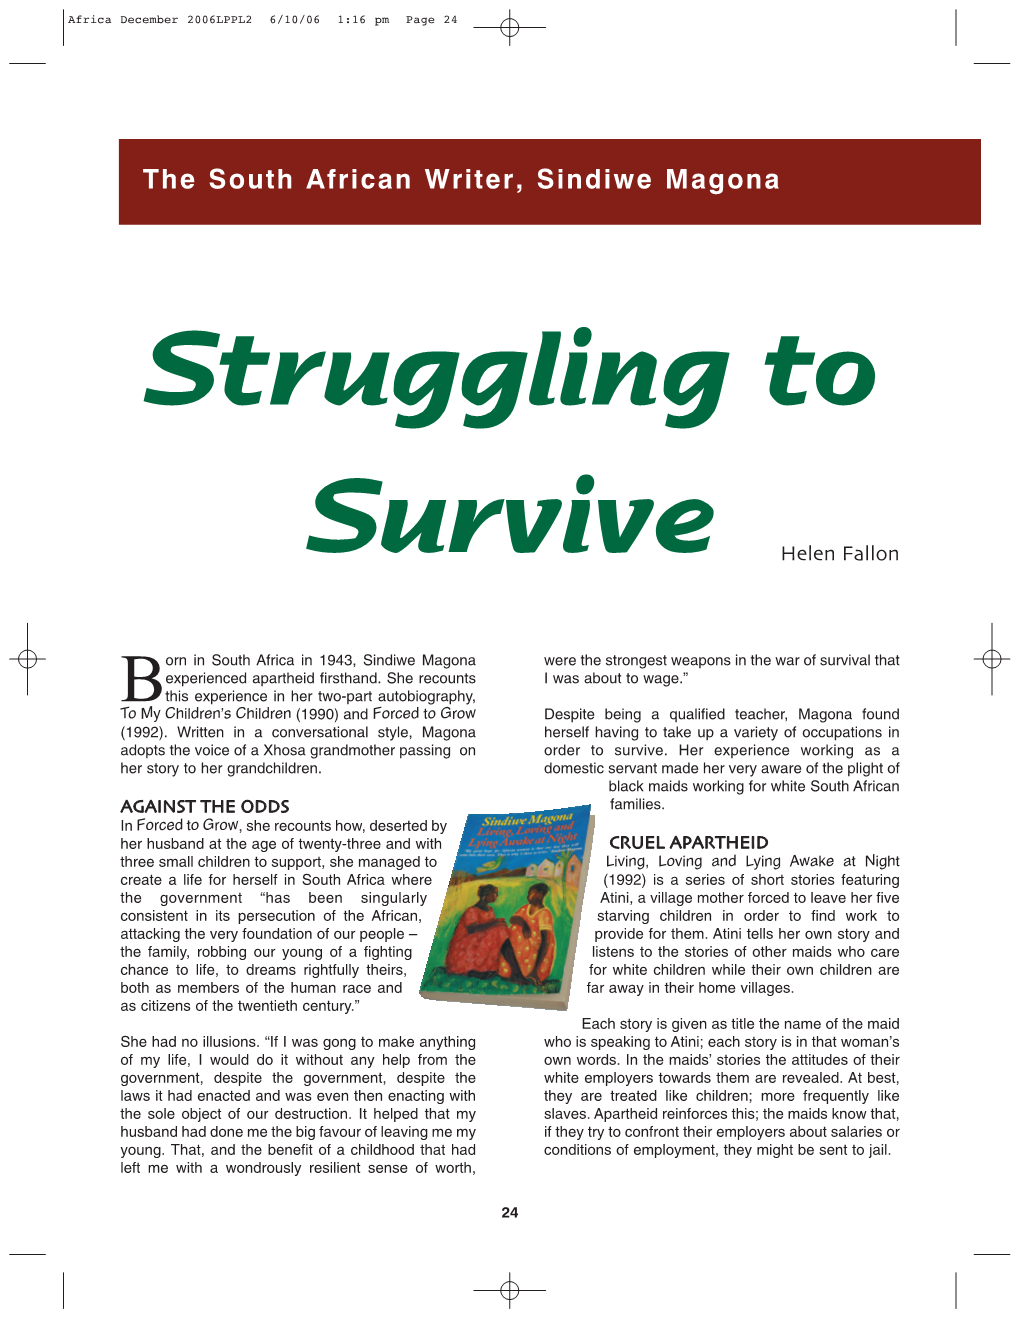 The South African Writer, Sindiwe Magona